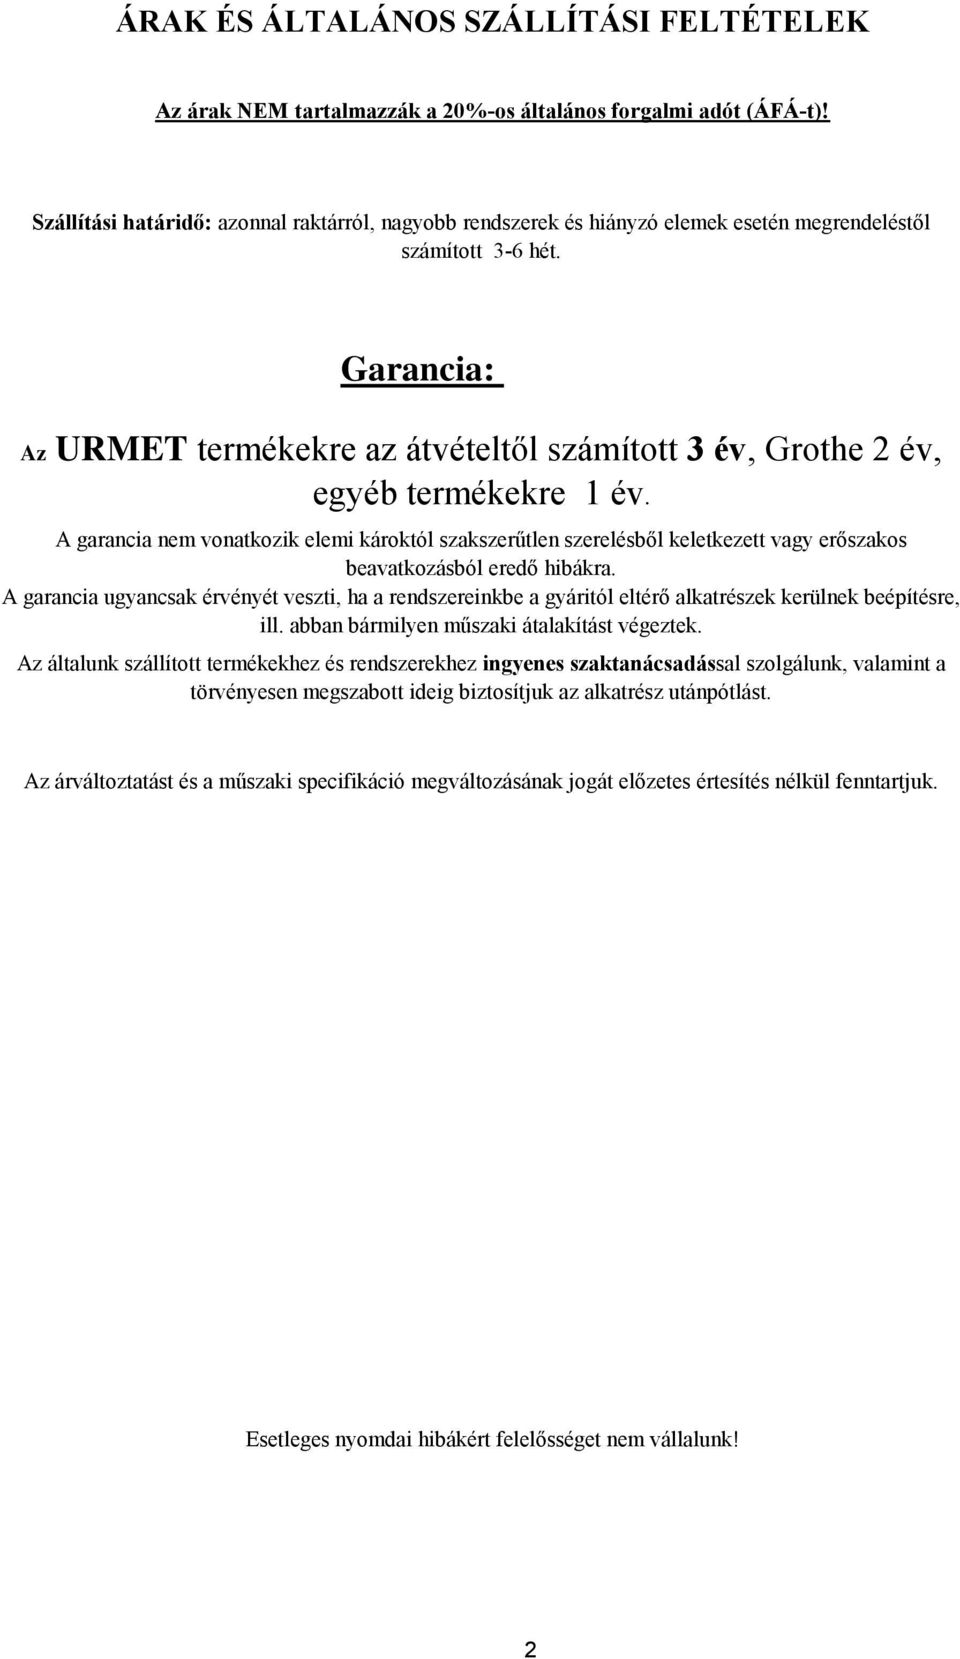 Garancia: Az URMET termékekre az átvételtől számított 3 év, Grothe 2 év, egyéb termékekre 1 év.